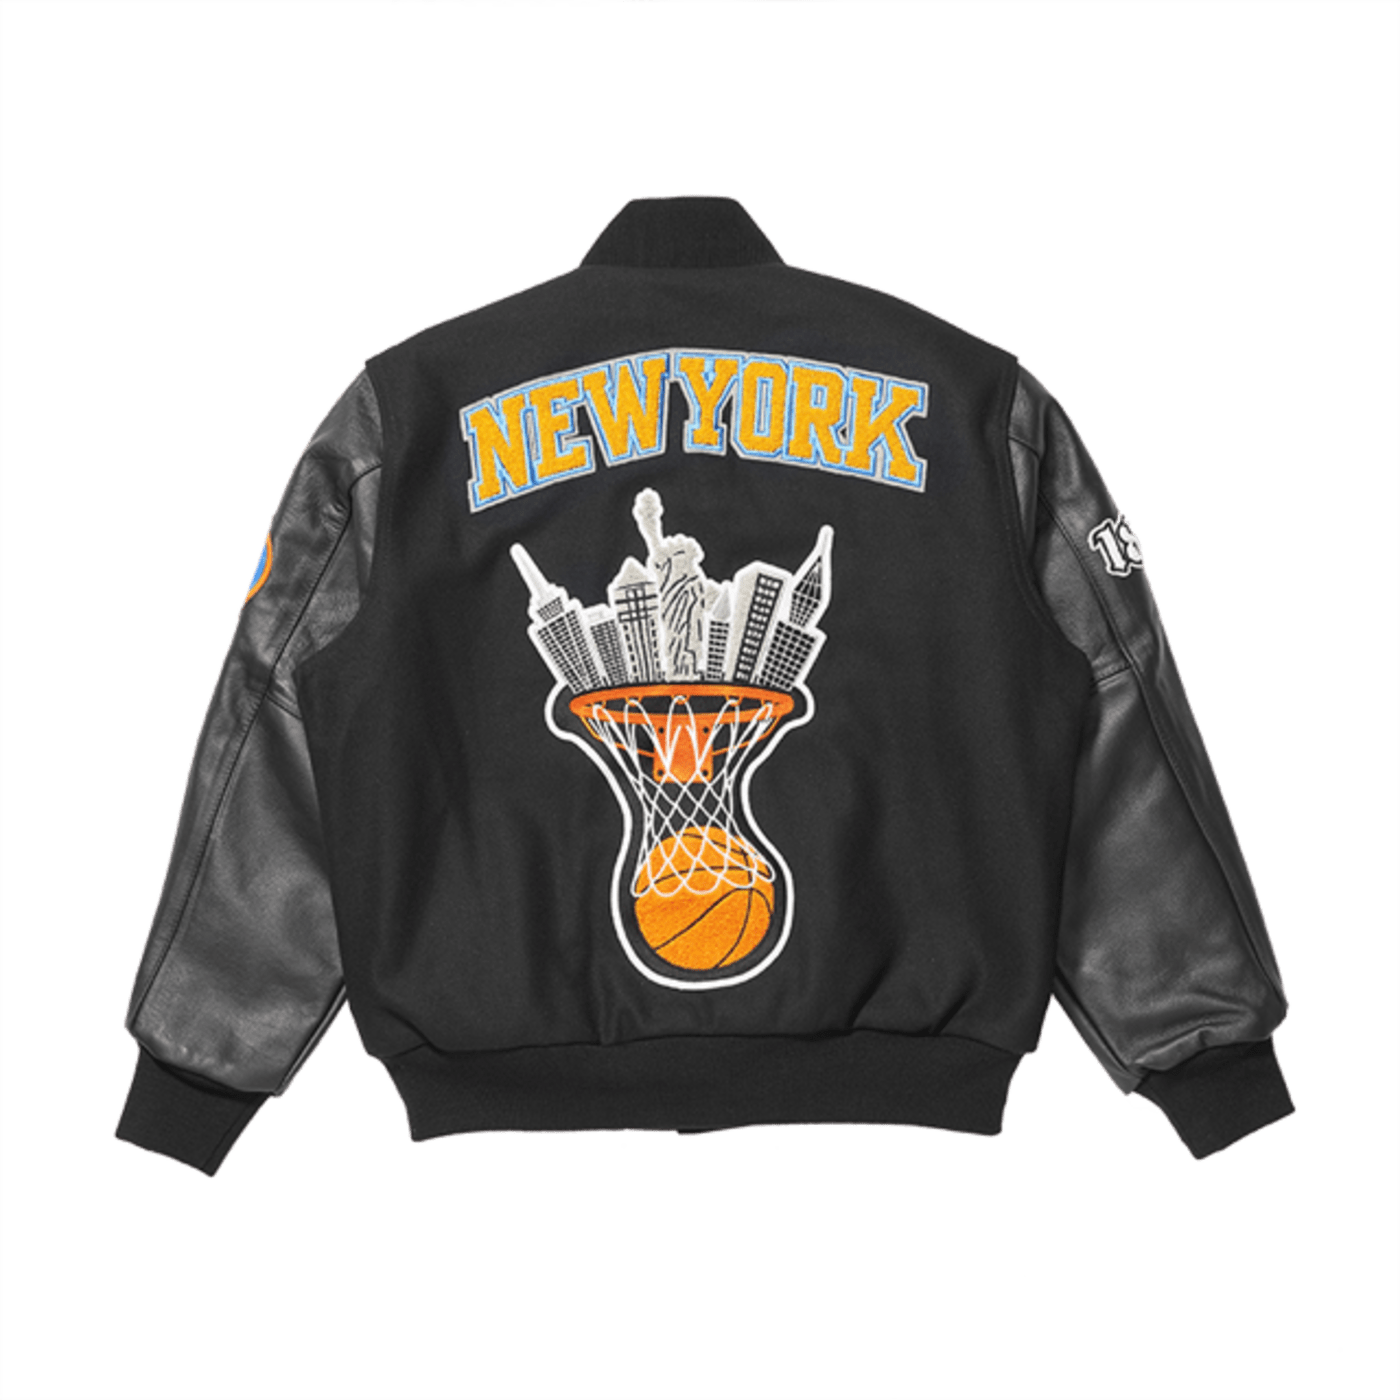 New York Knicks x 1800 Tequila x New York Nico Varsity Jacket